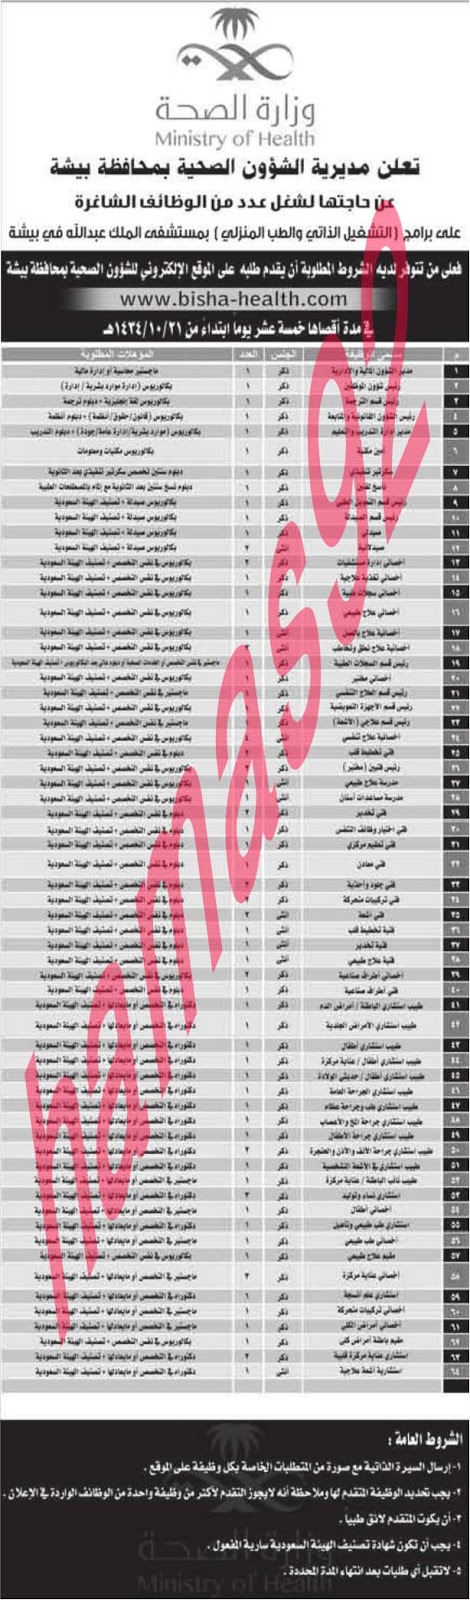 وظائف شاغرة فى وزارة الصحة السعودية الاربعاء 28-08-2013 %D8%A7%D9%84%D9%88%D8%B7%D9%86+%D8%B3+1